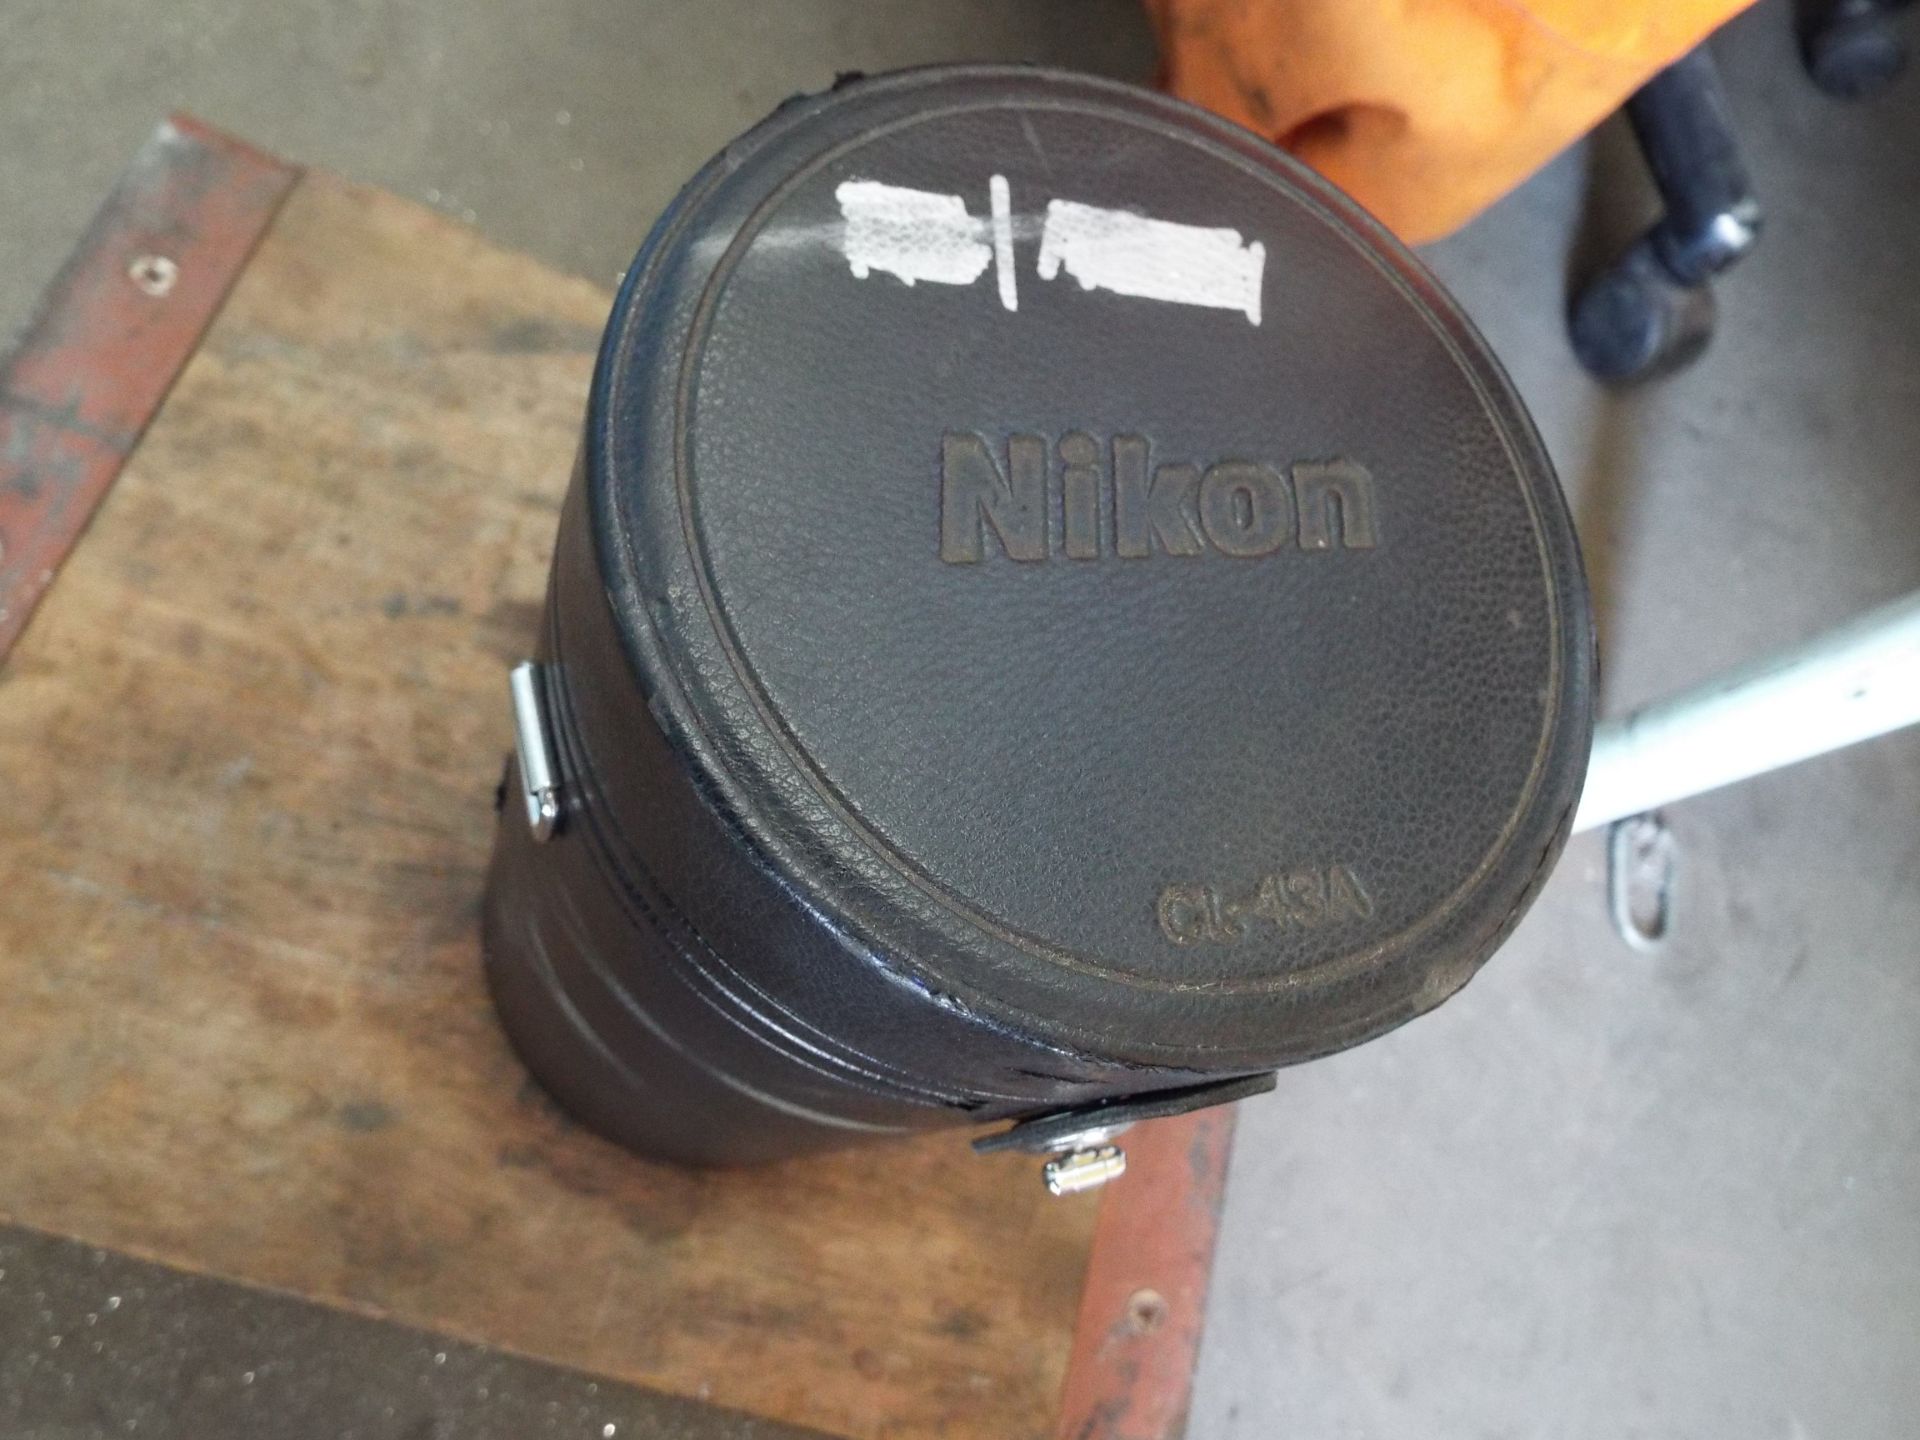 Nikon ED AF Nikkor 80-200mm 1:2.8 D Lense with Leather Carry Case - Image 7 of 8